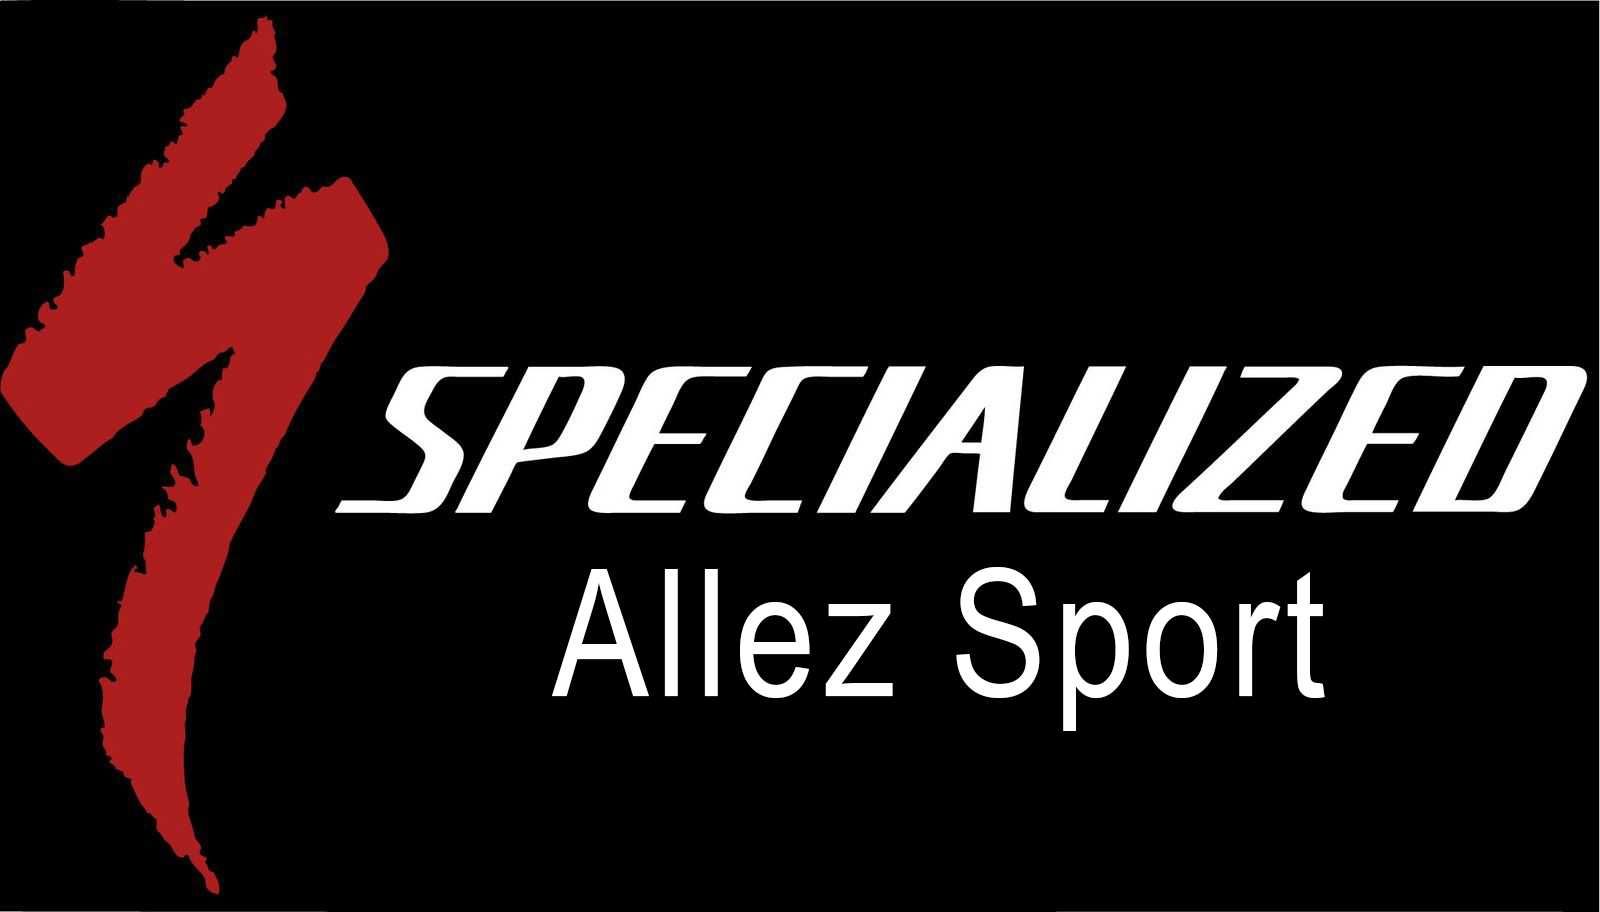 Specialized Allez Sport